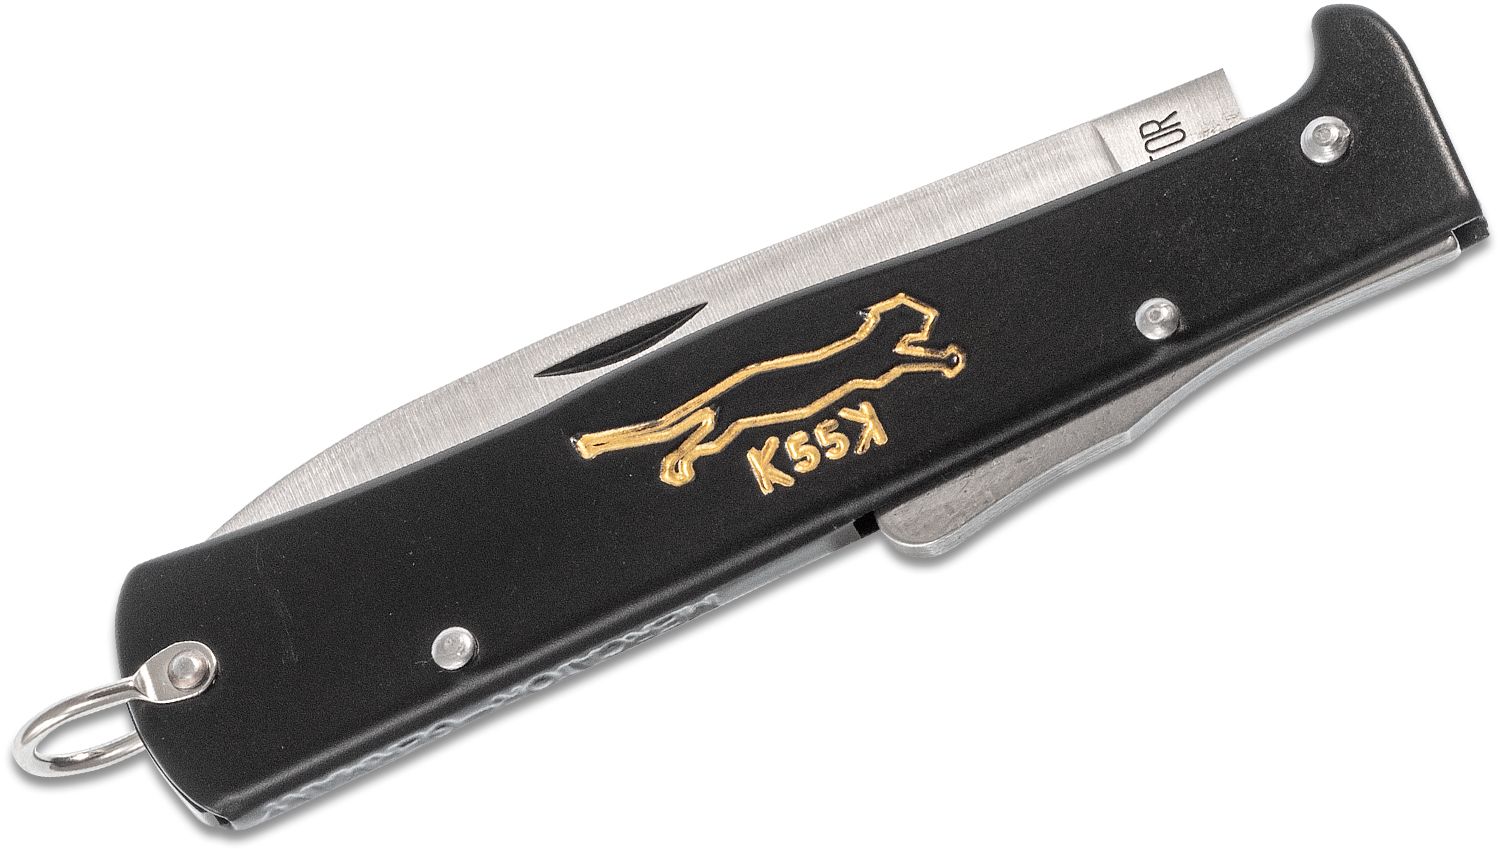 Otter Messer Mercator K55K Knife – Worn Path